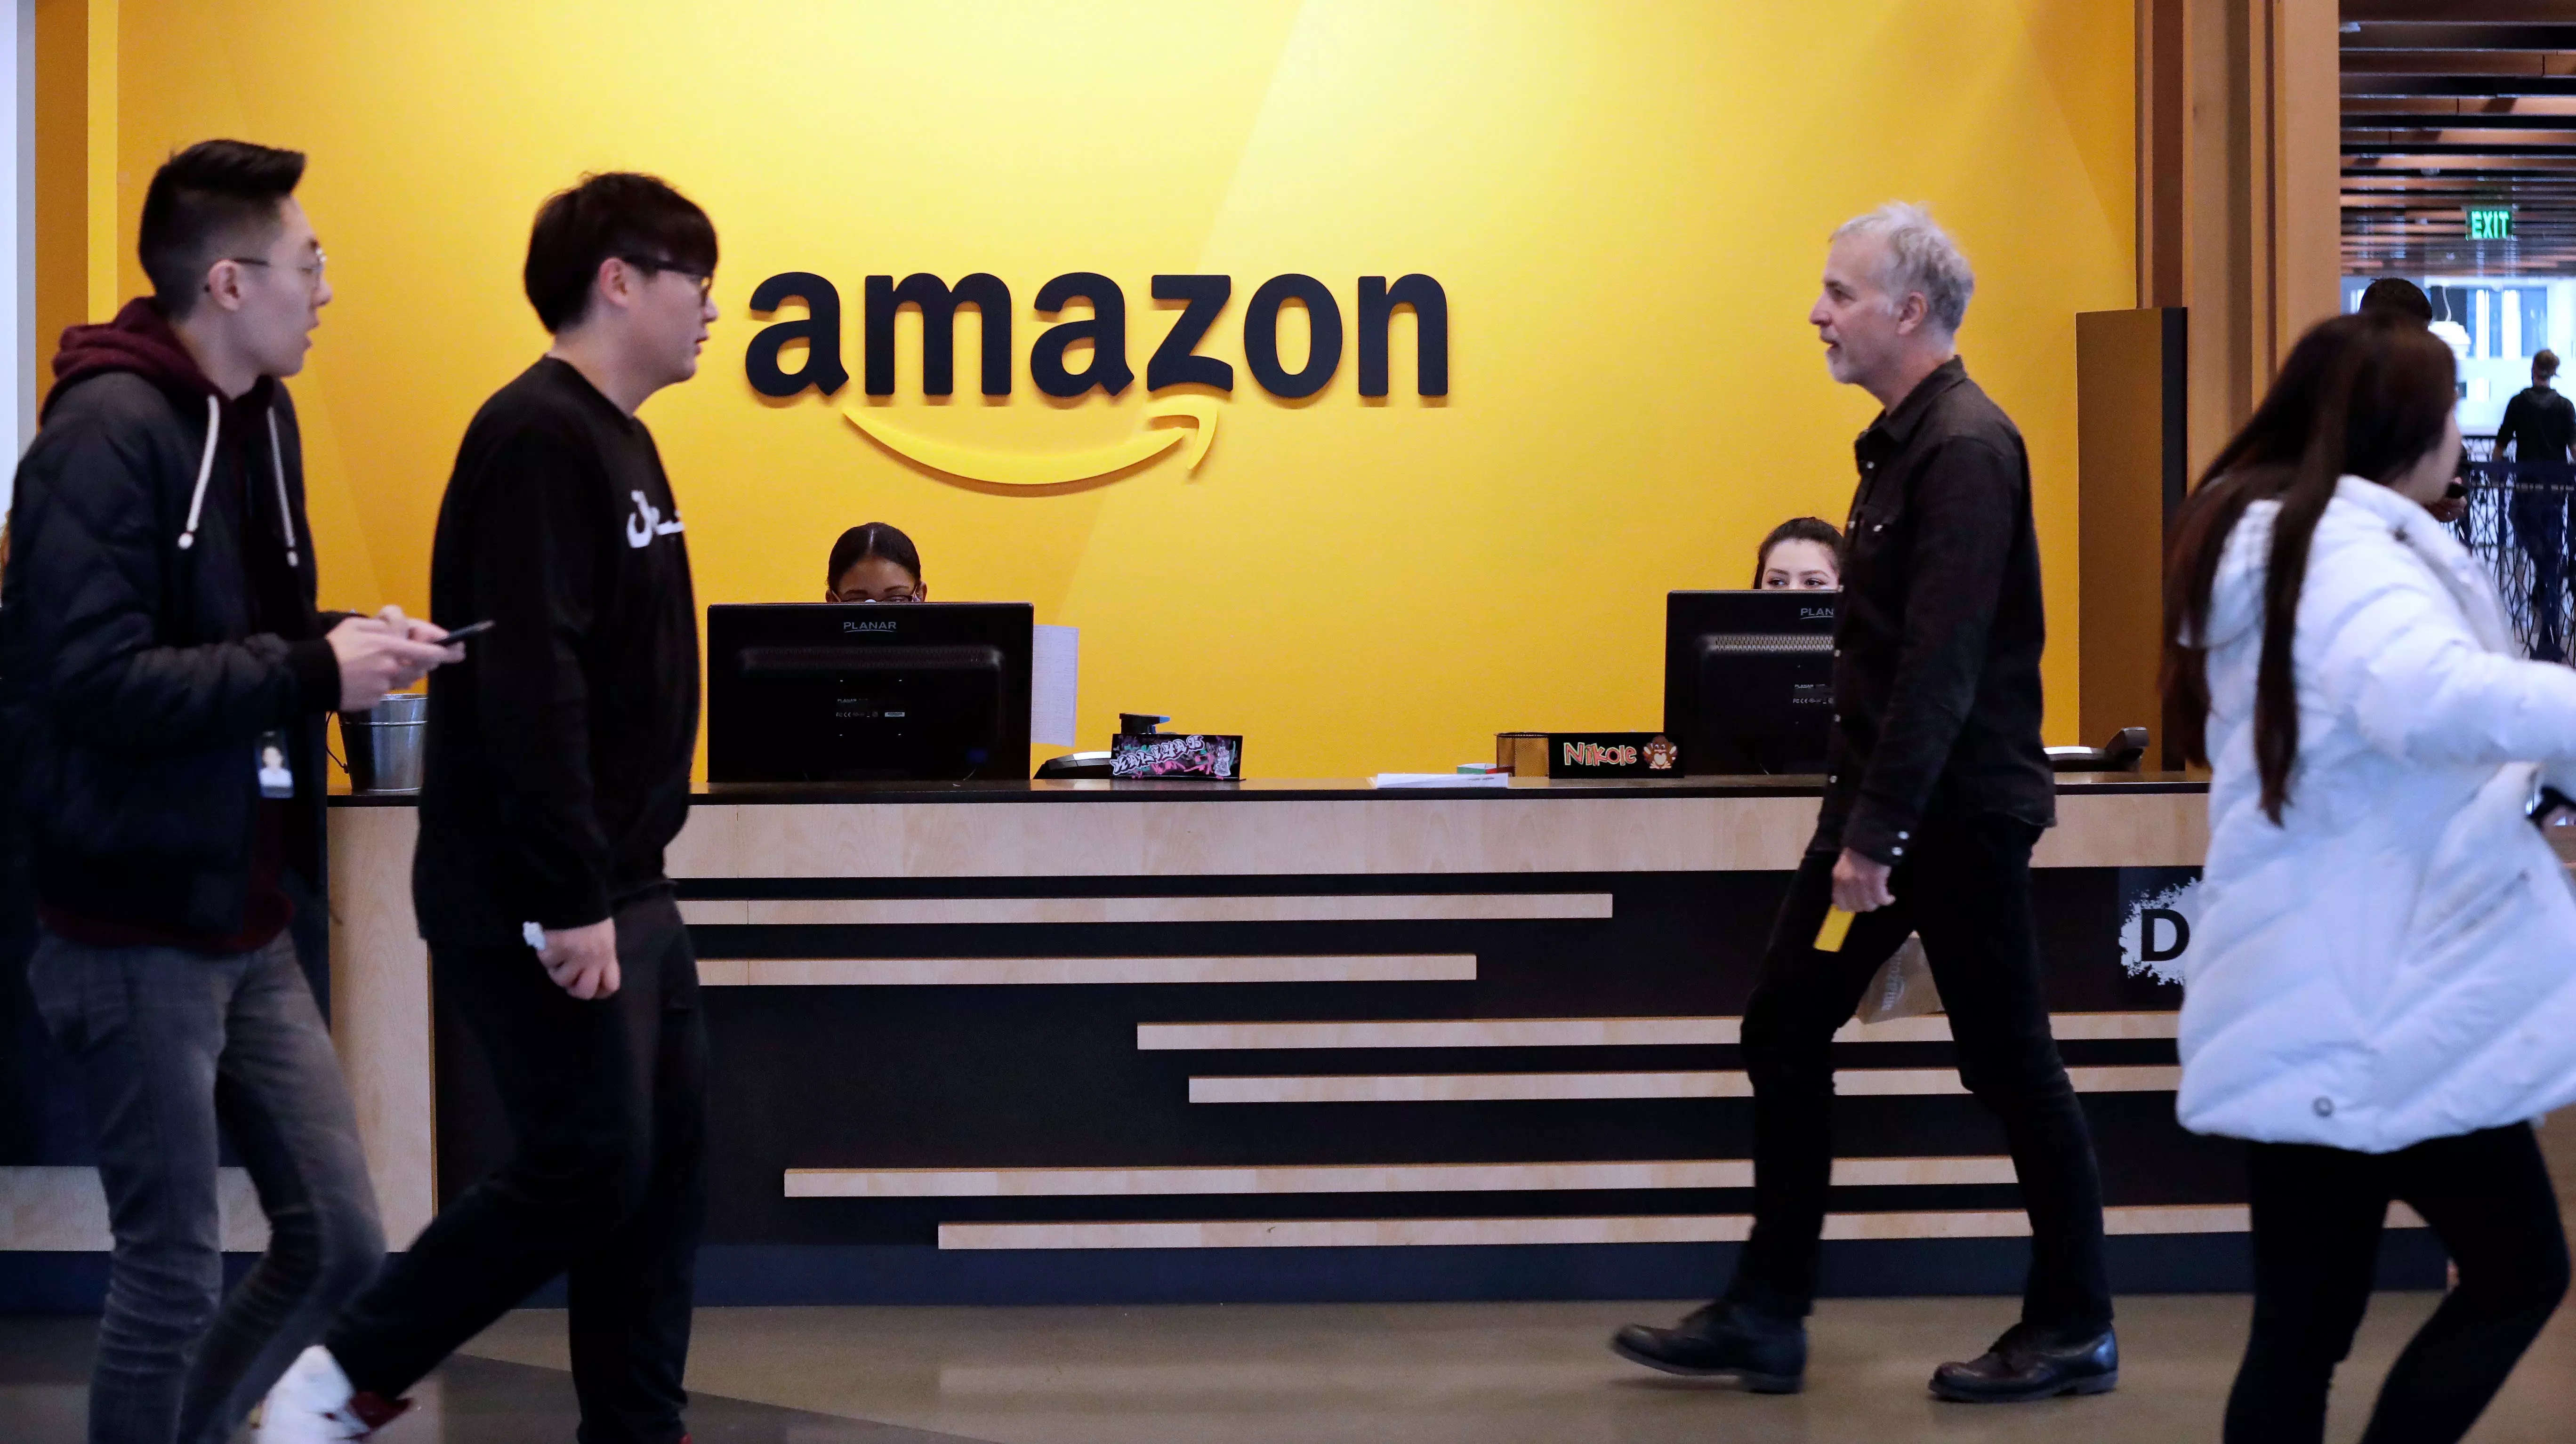 Amazon employees headquarters